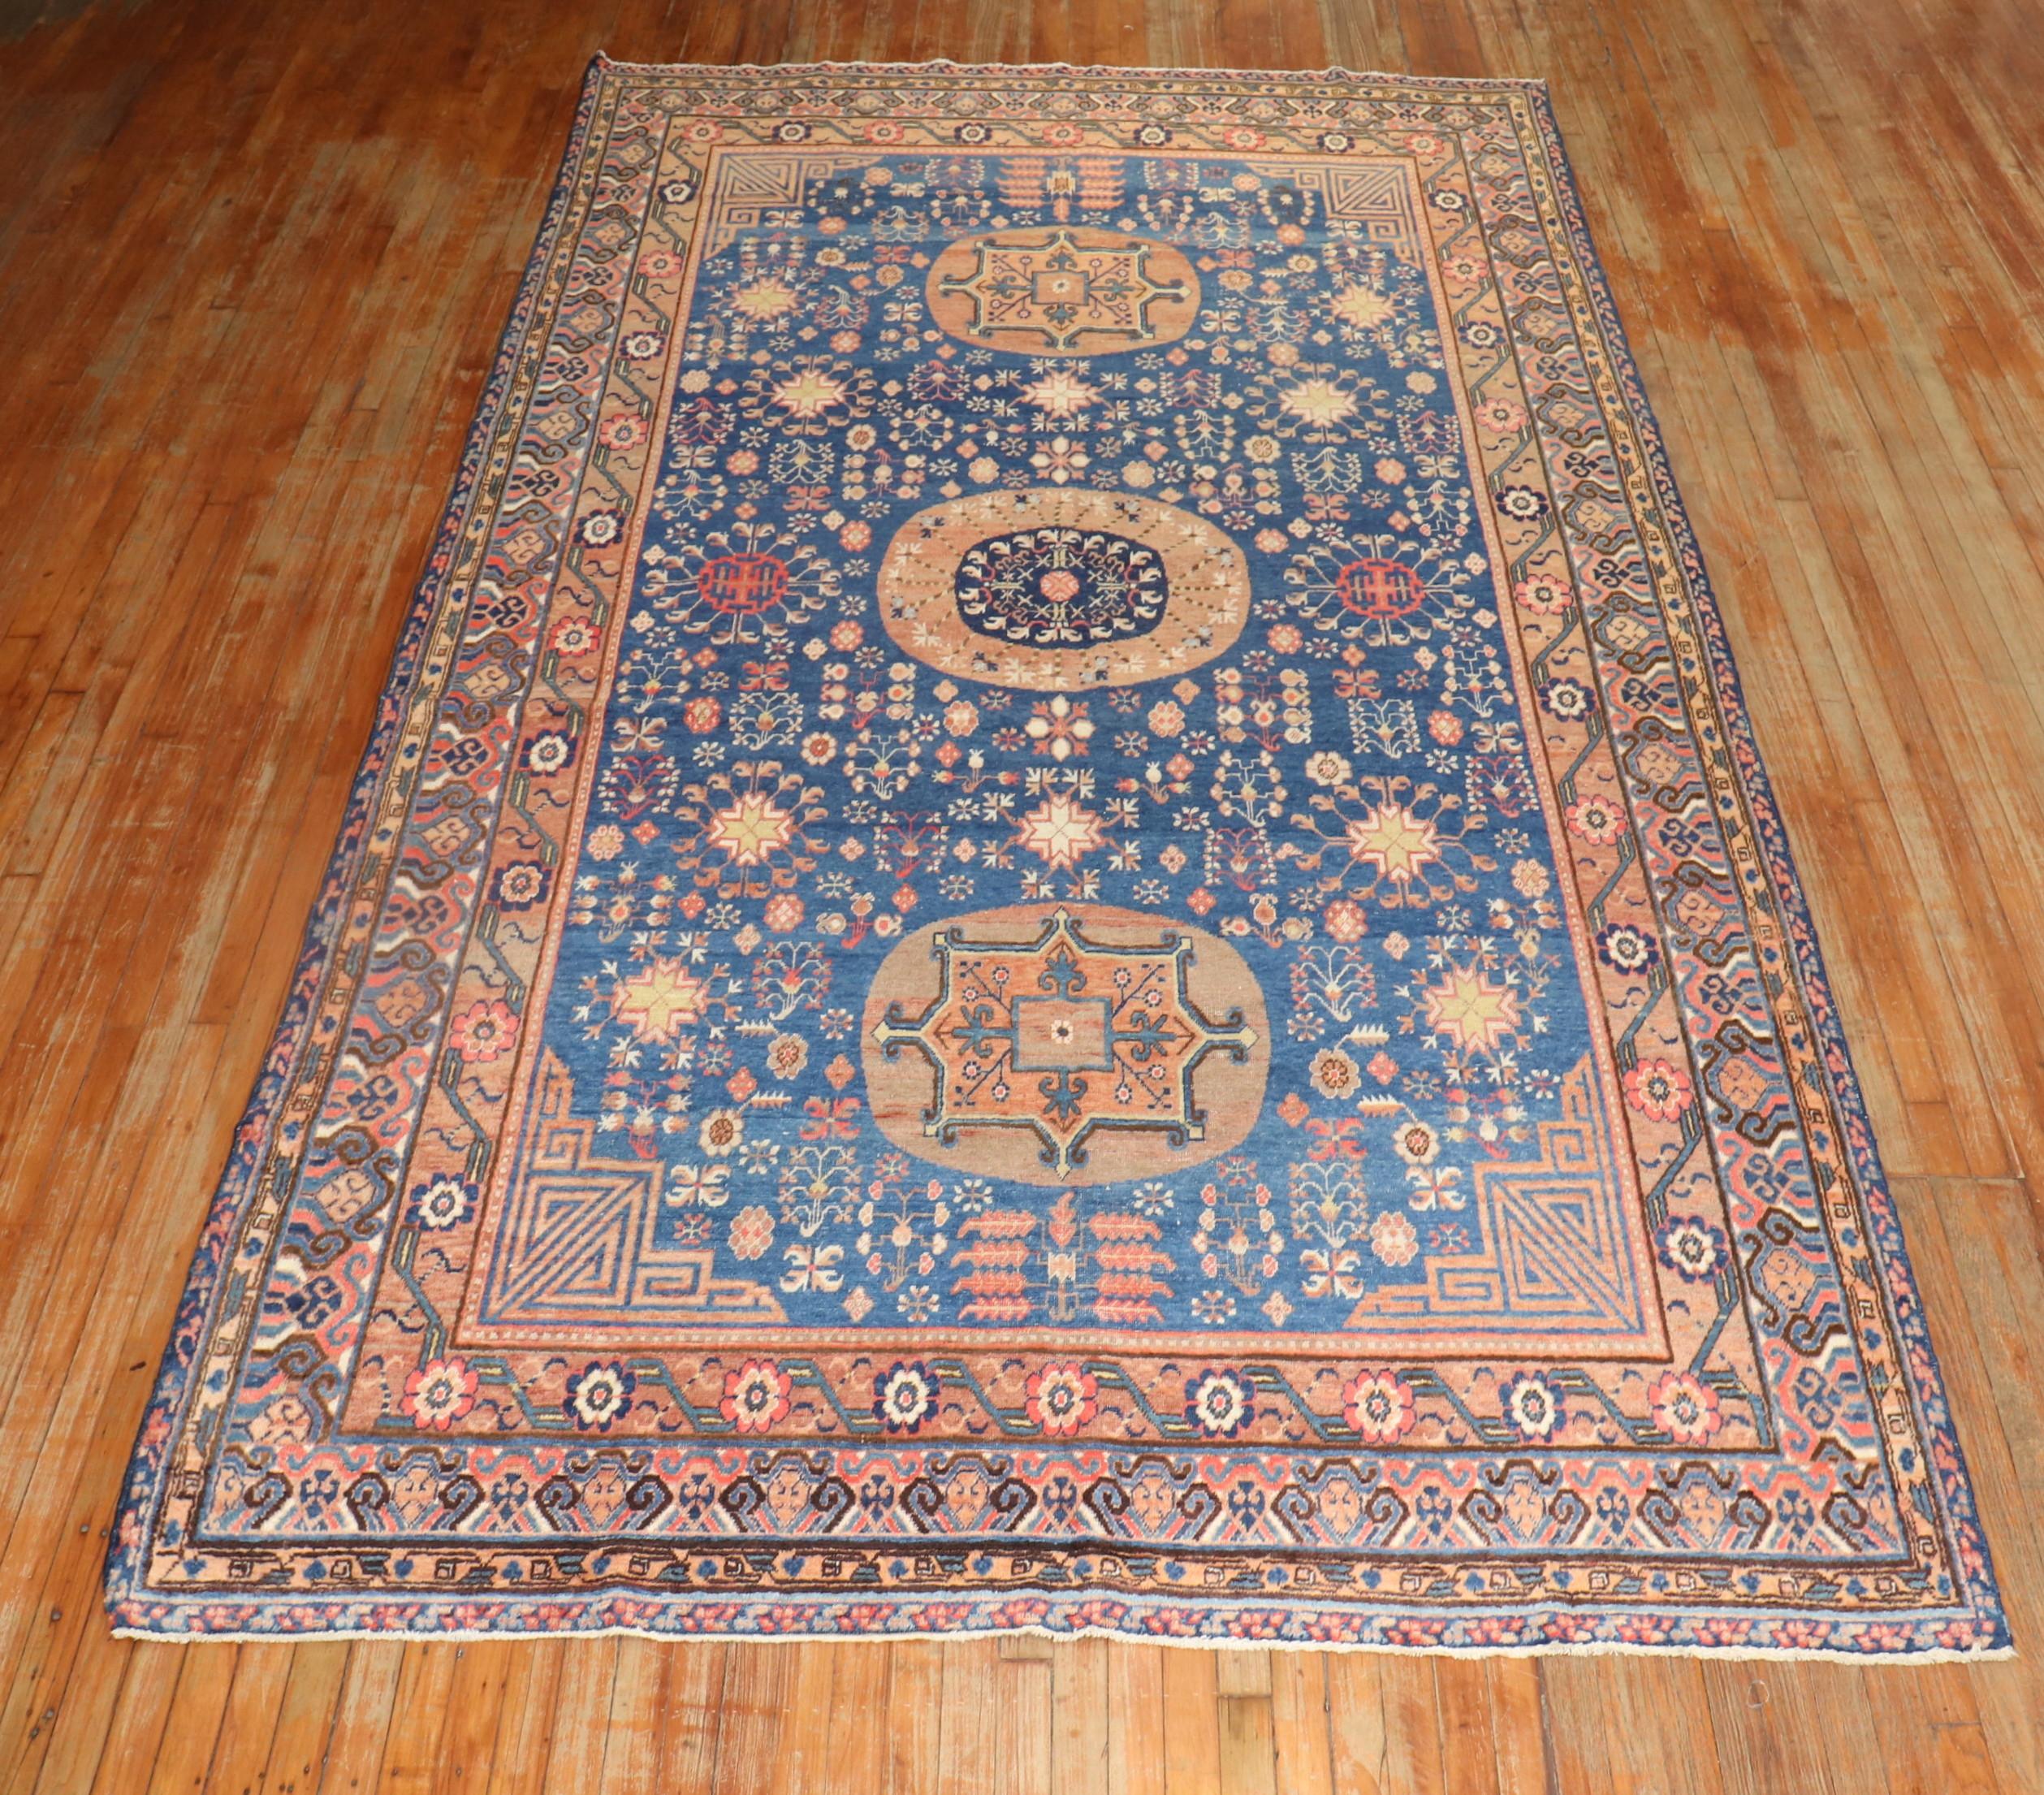 Frühes 20. Jahrhundert Blaue Farbe Antike Khotan Gallery Größe Teppich

Einzelheiten
Teppich nein.	j2674
Größe	6' 10